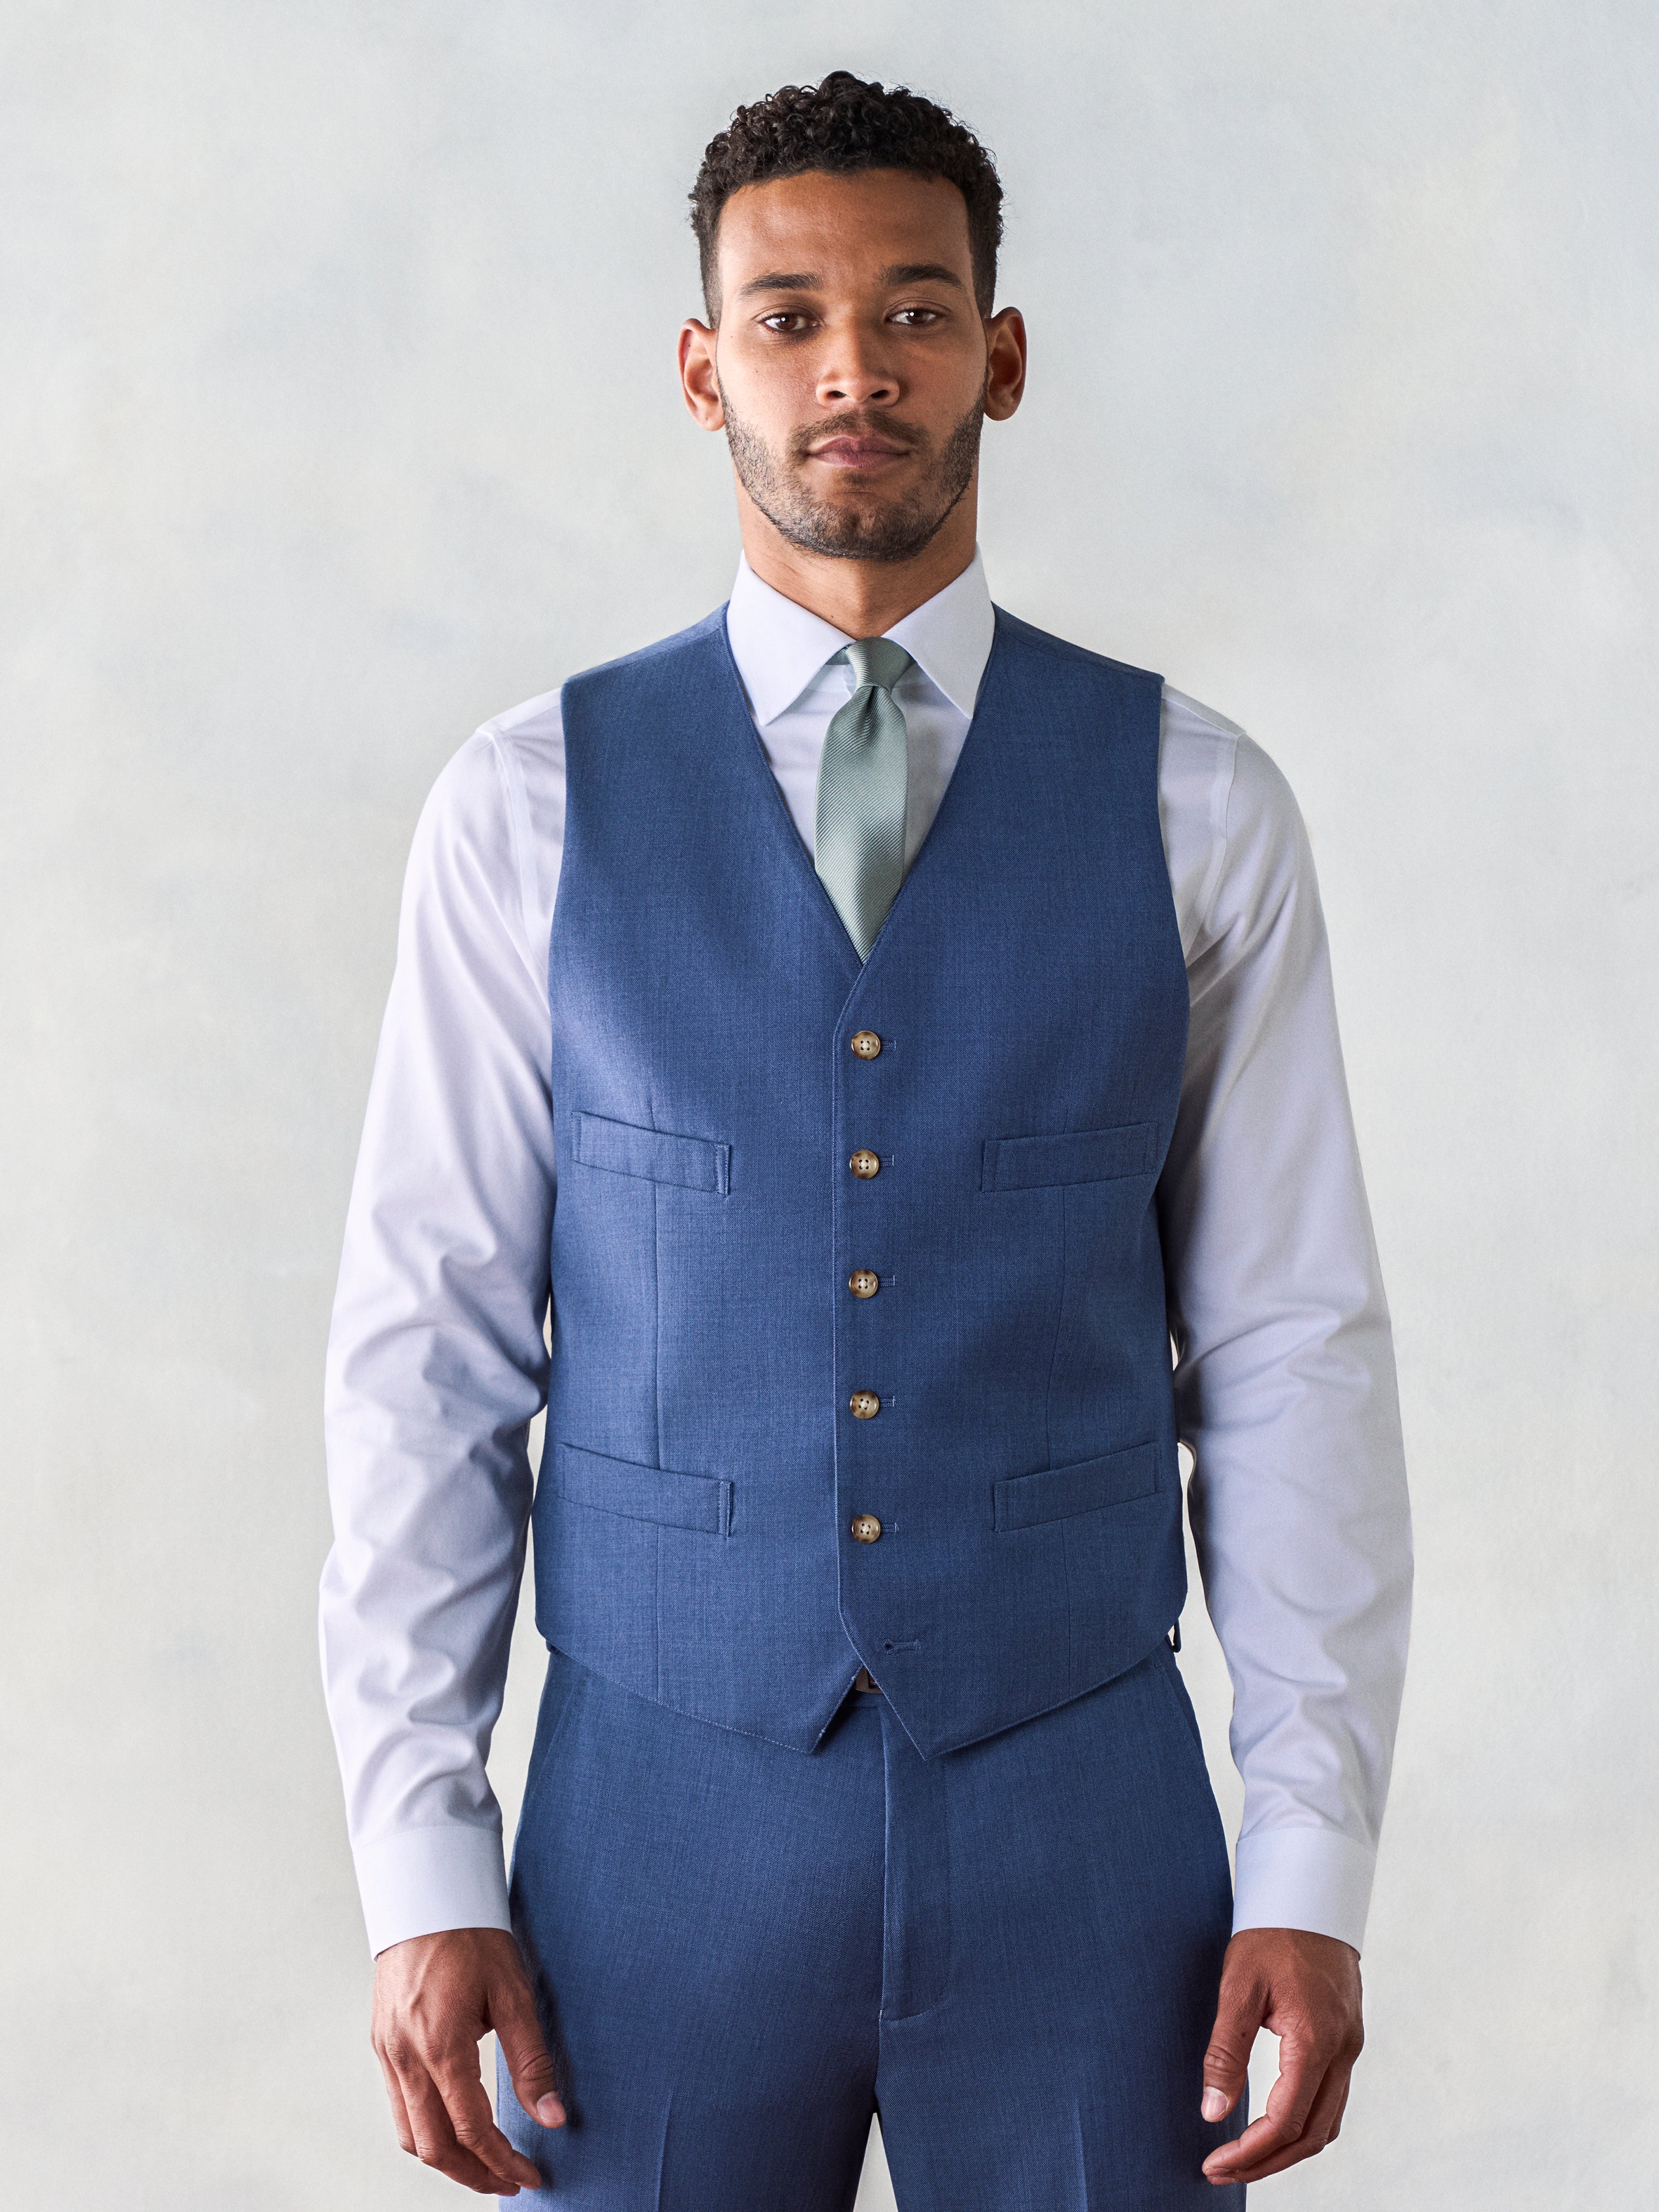 Light Blue Suit Vest | Vests for Weddings & Events